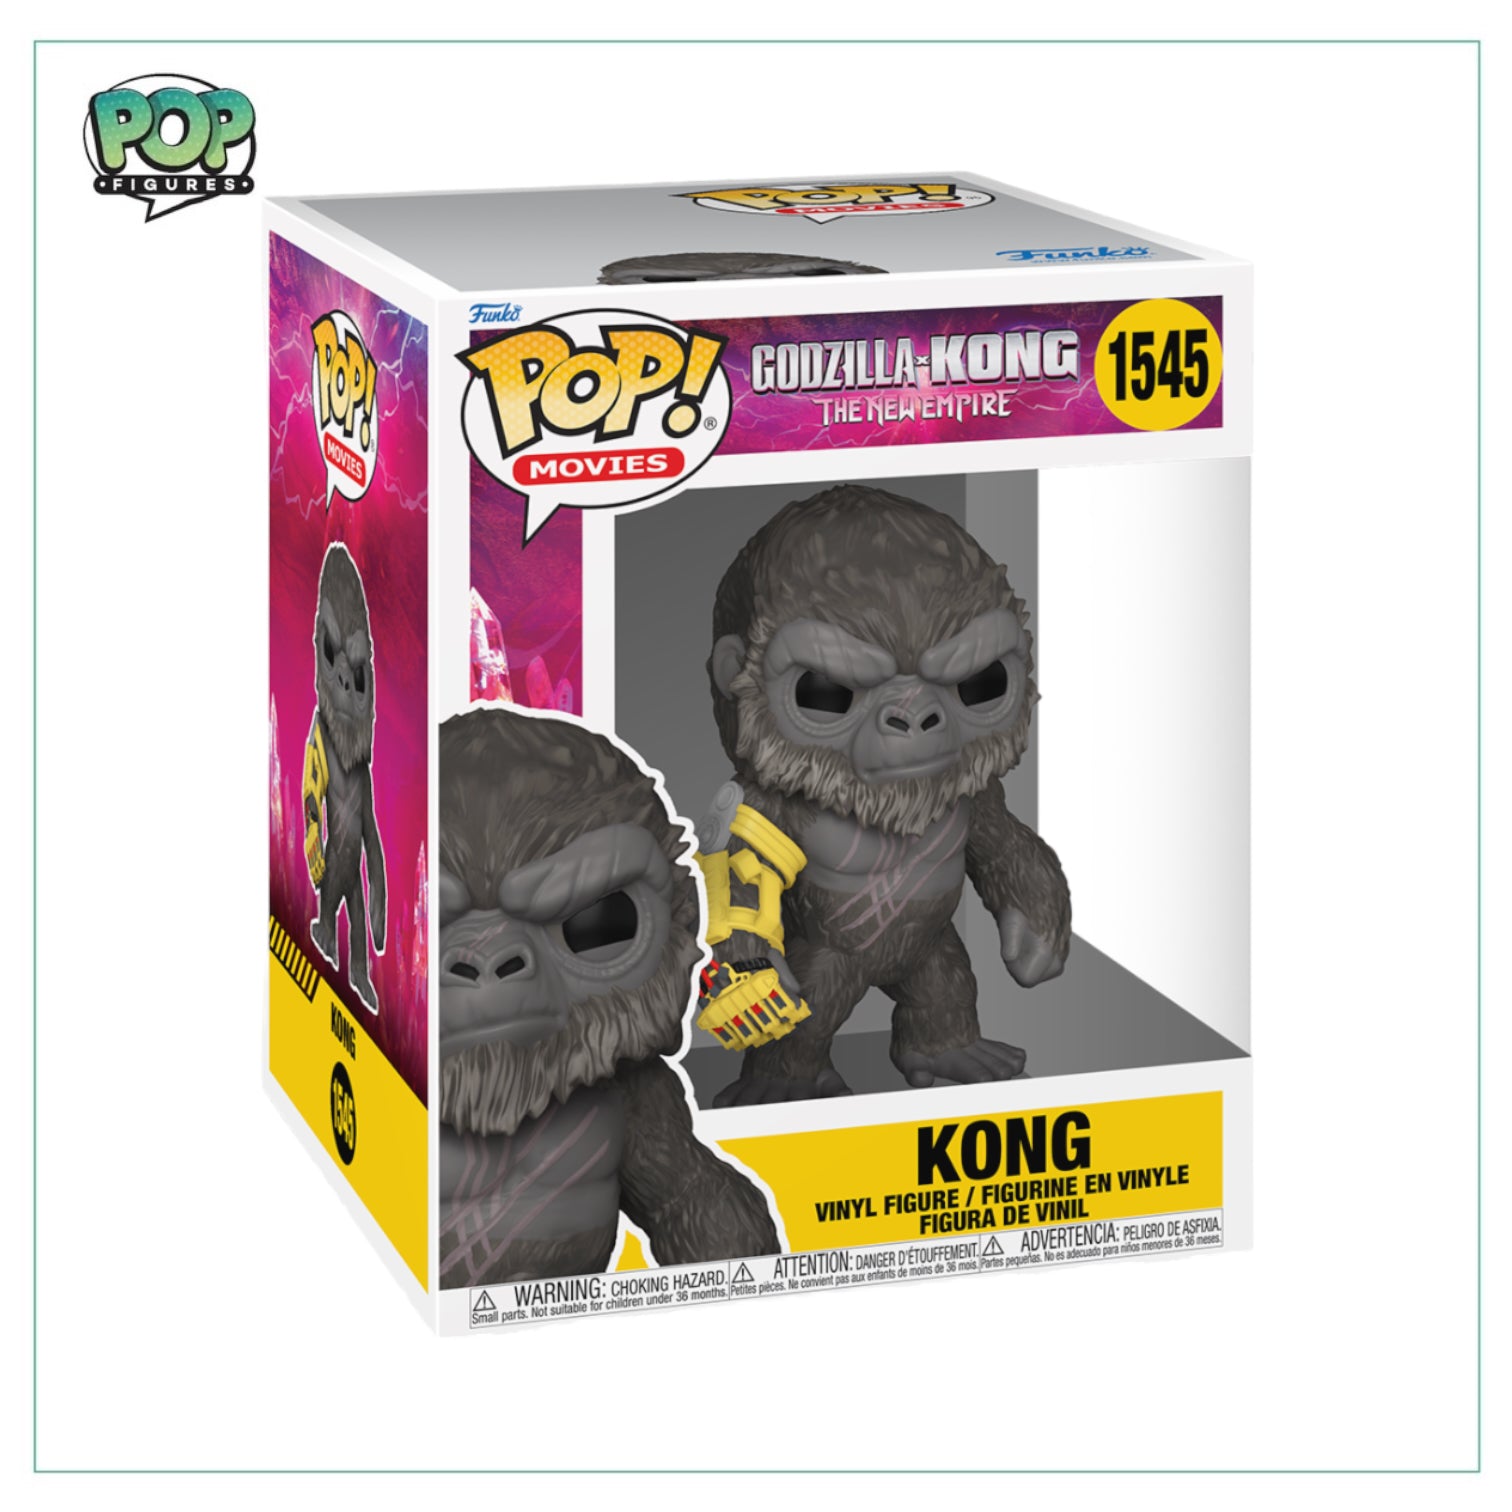 King Kong #1545 Funko Pop! Super Godzilla VS King Kong: The New Empire - PREORDER